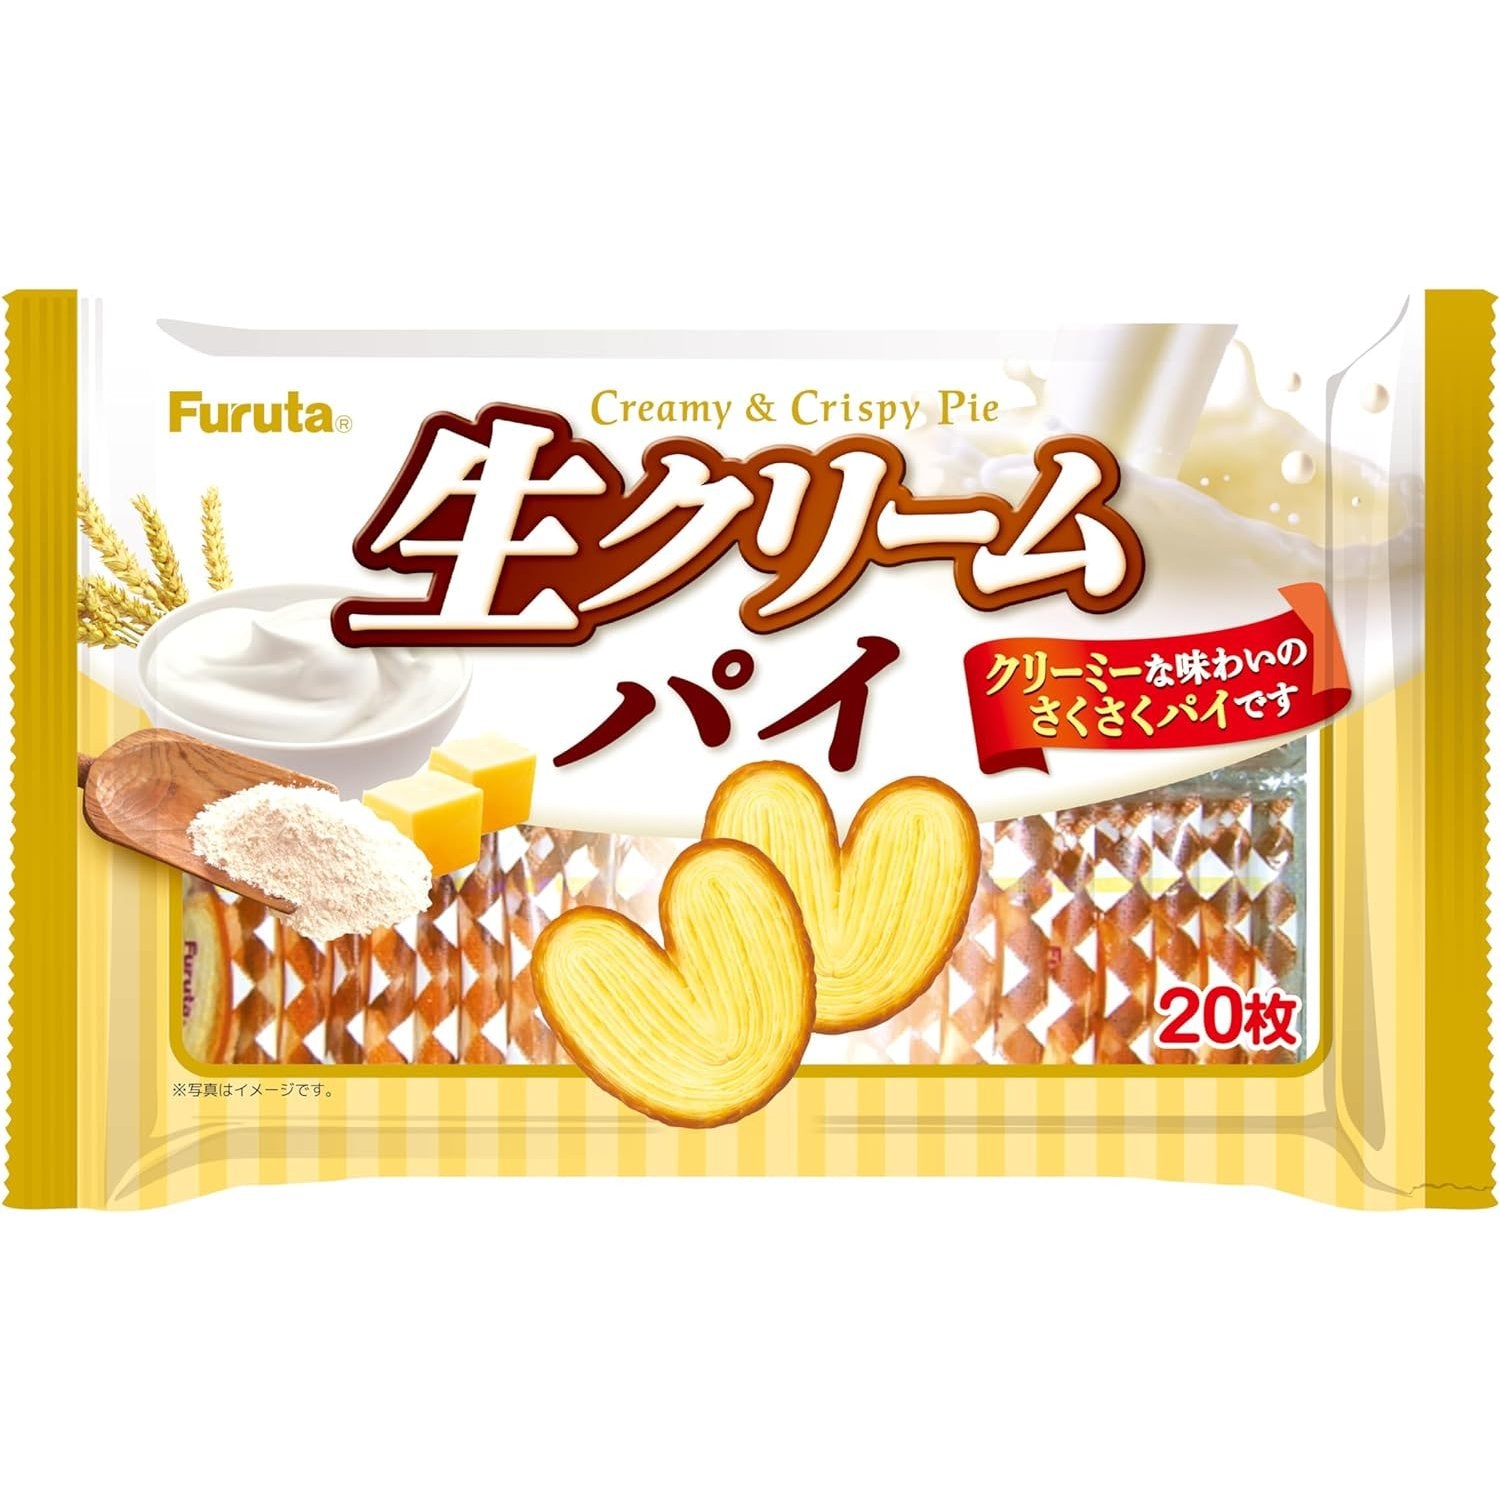 Furuta Fresh Cream Butterfly Pie Snack 20 Pieces